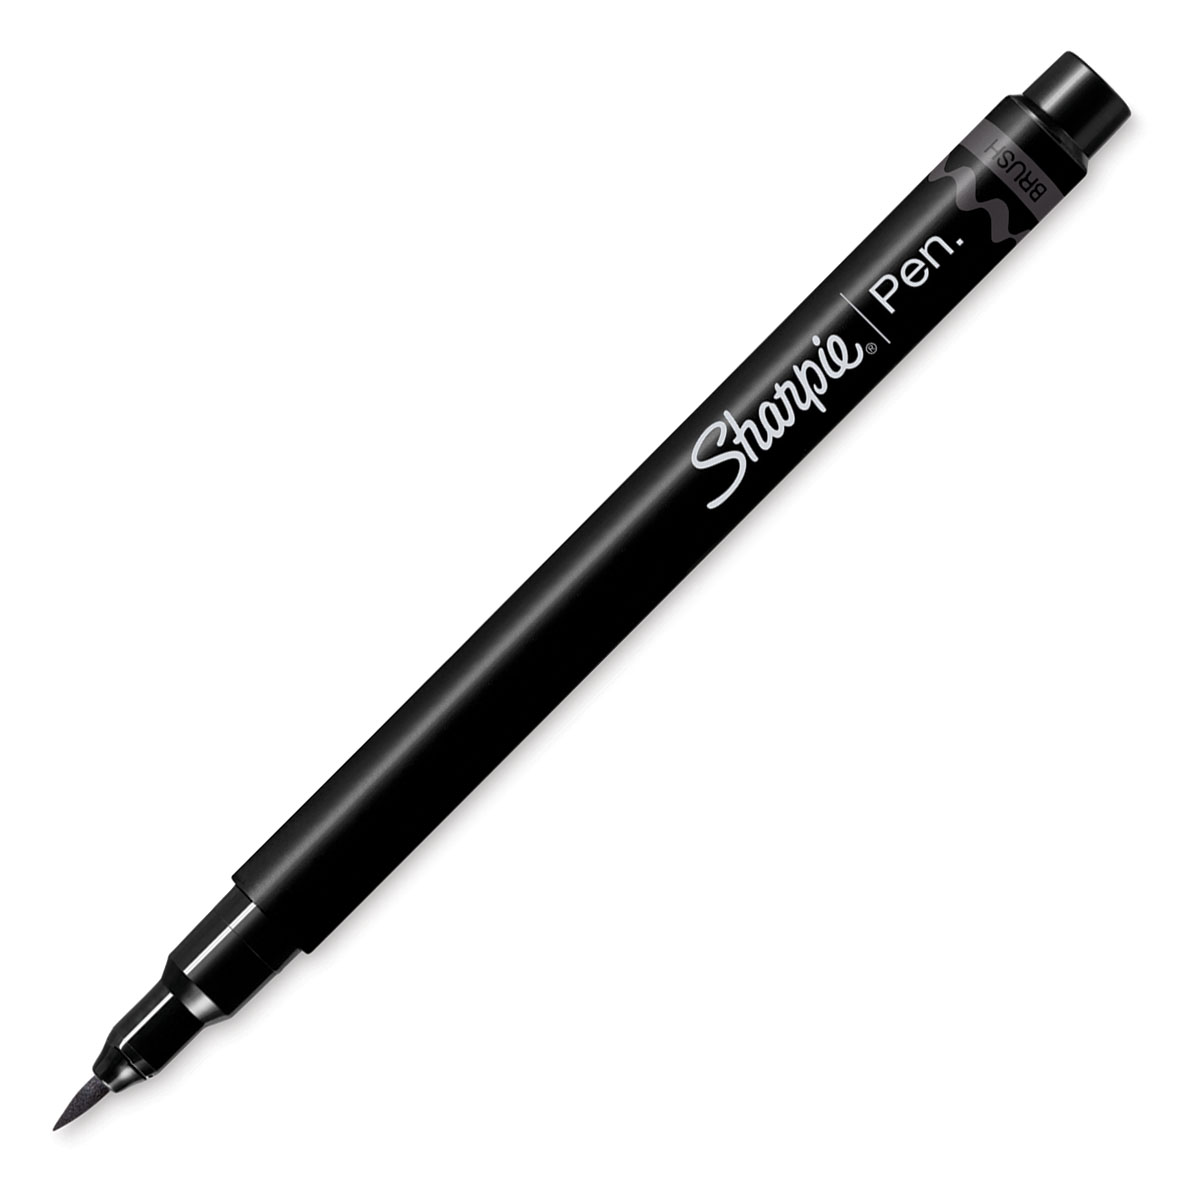 NEW Sharpie Brush Pen Demo - Blending Markers, Brush Tip Pens